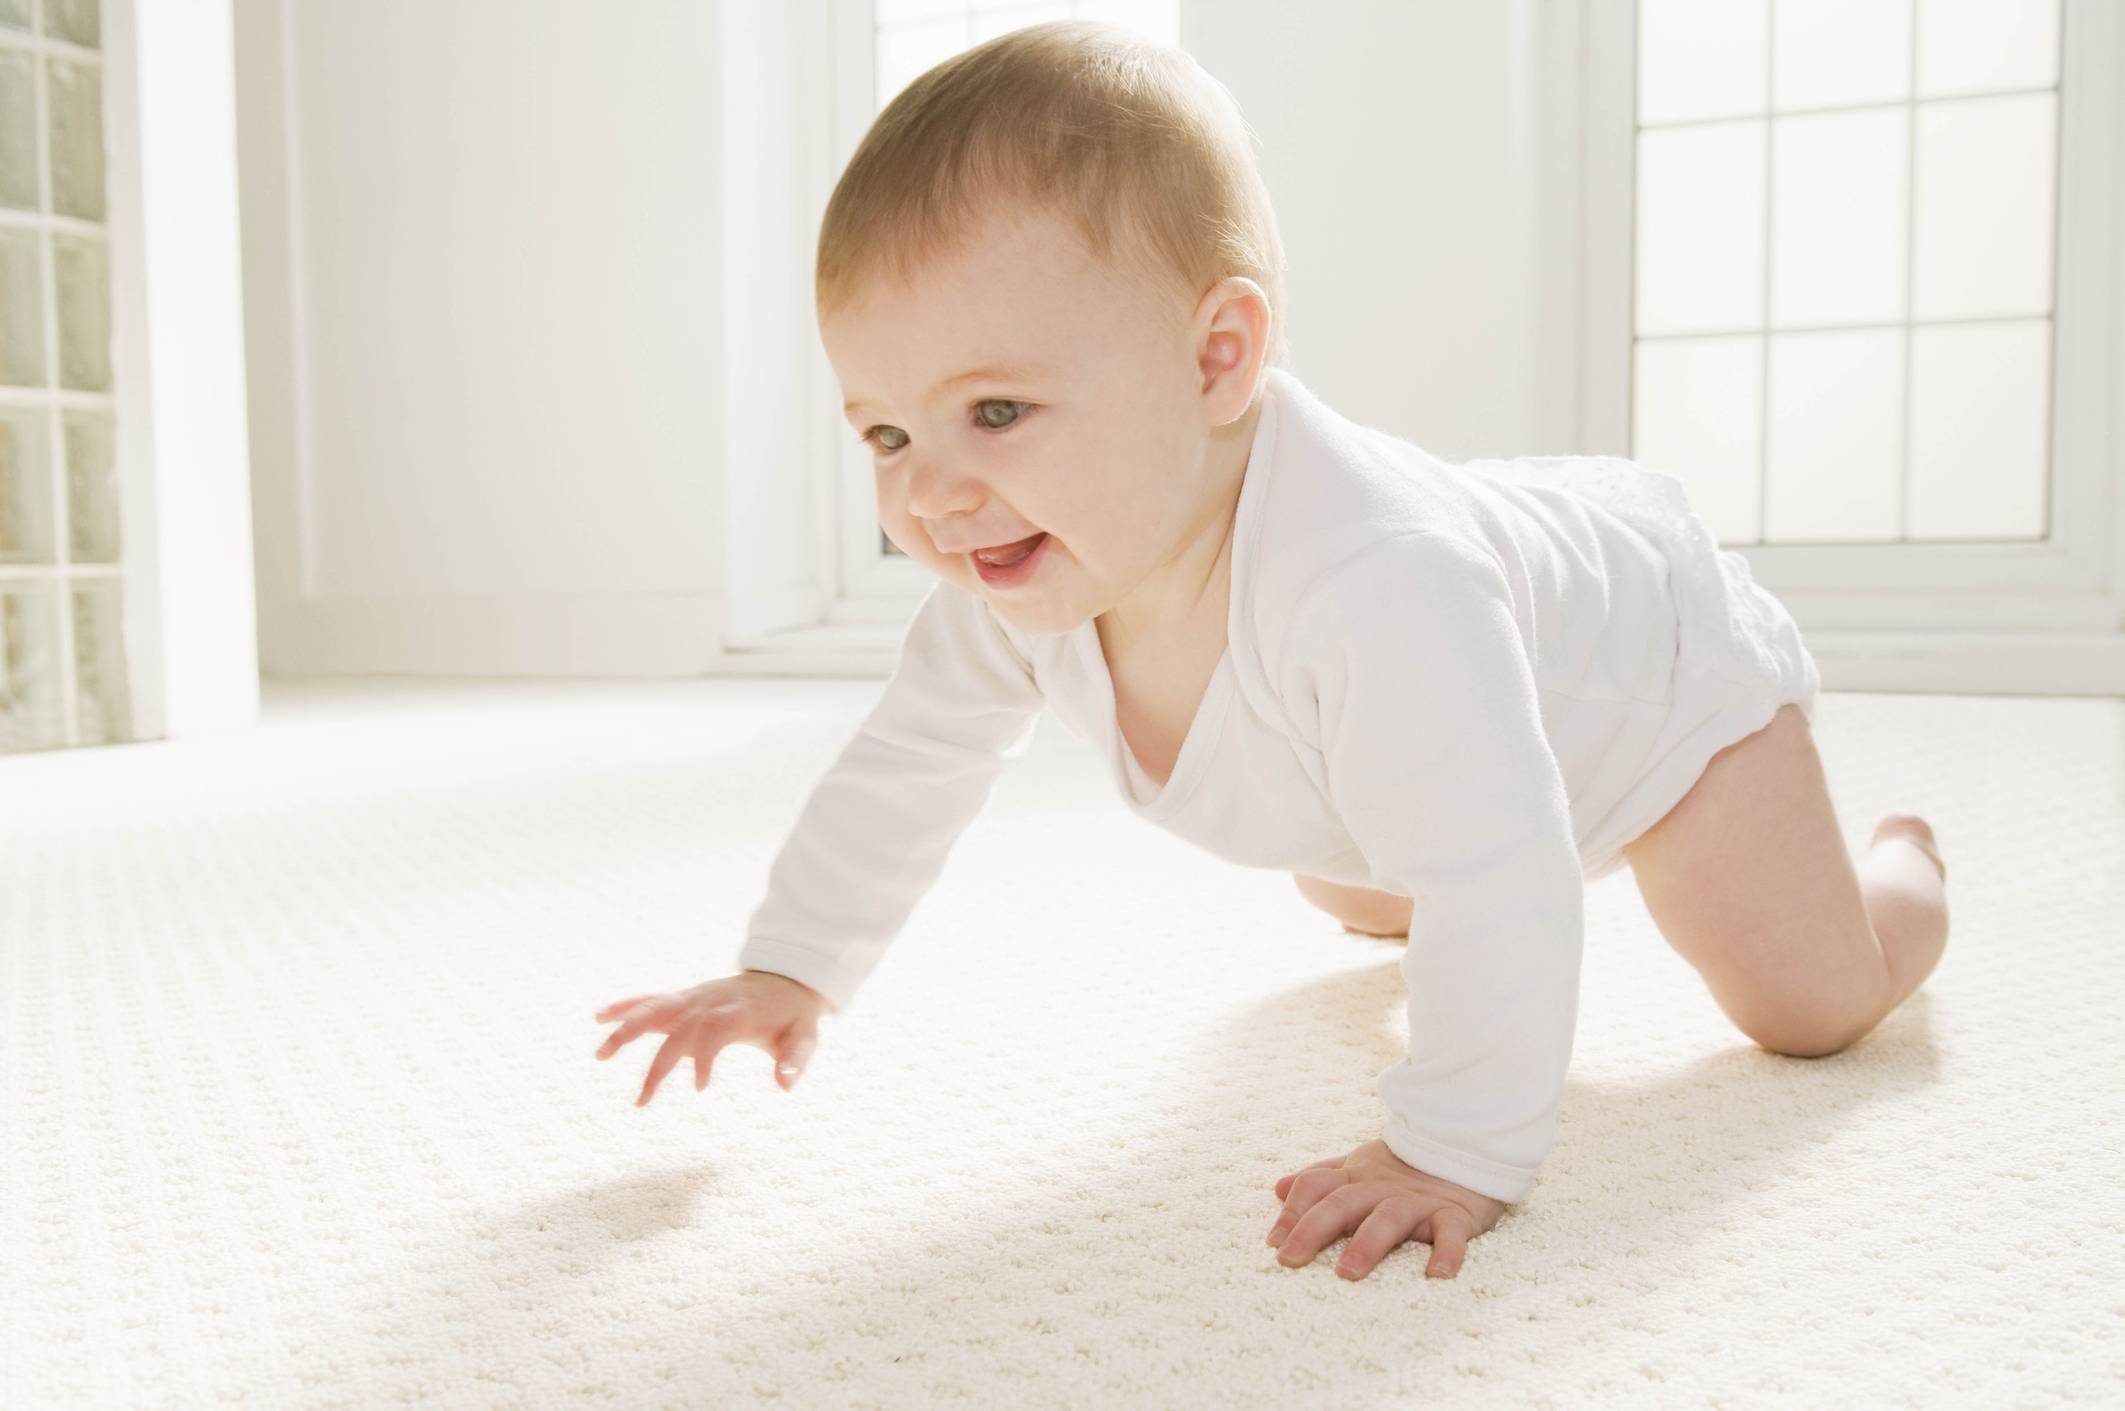 Встаем на четвереньки: как научить малыша ползать. несложные упражнения помогут научить вашего малыша вставать на четвереньки